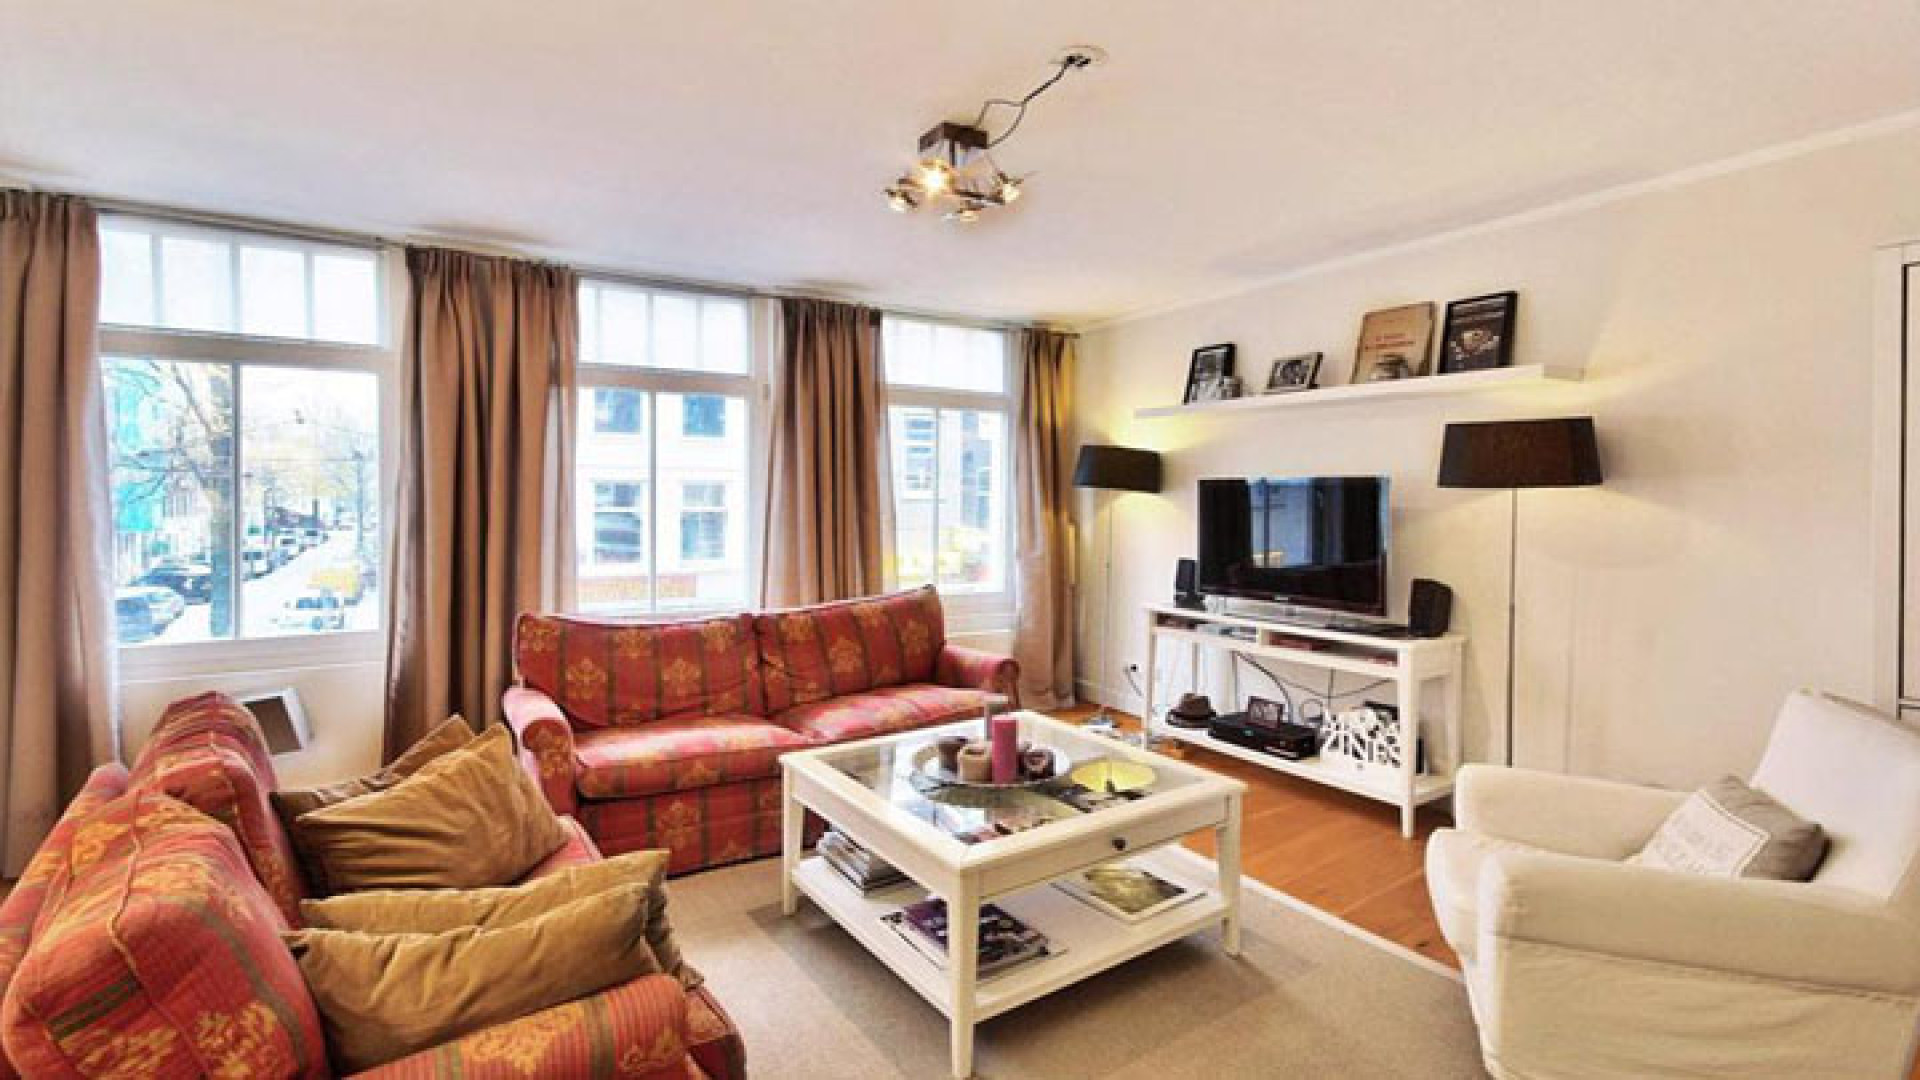 Gregory van der Wiel koopt appartement in populaire Amsterdamse stadsdeel  De Pijp! Zie foto's